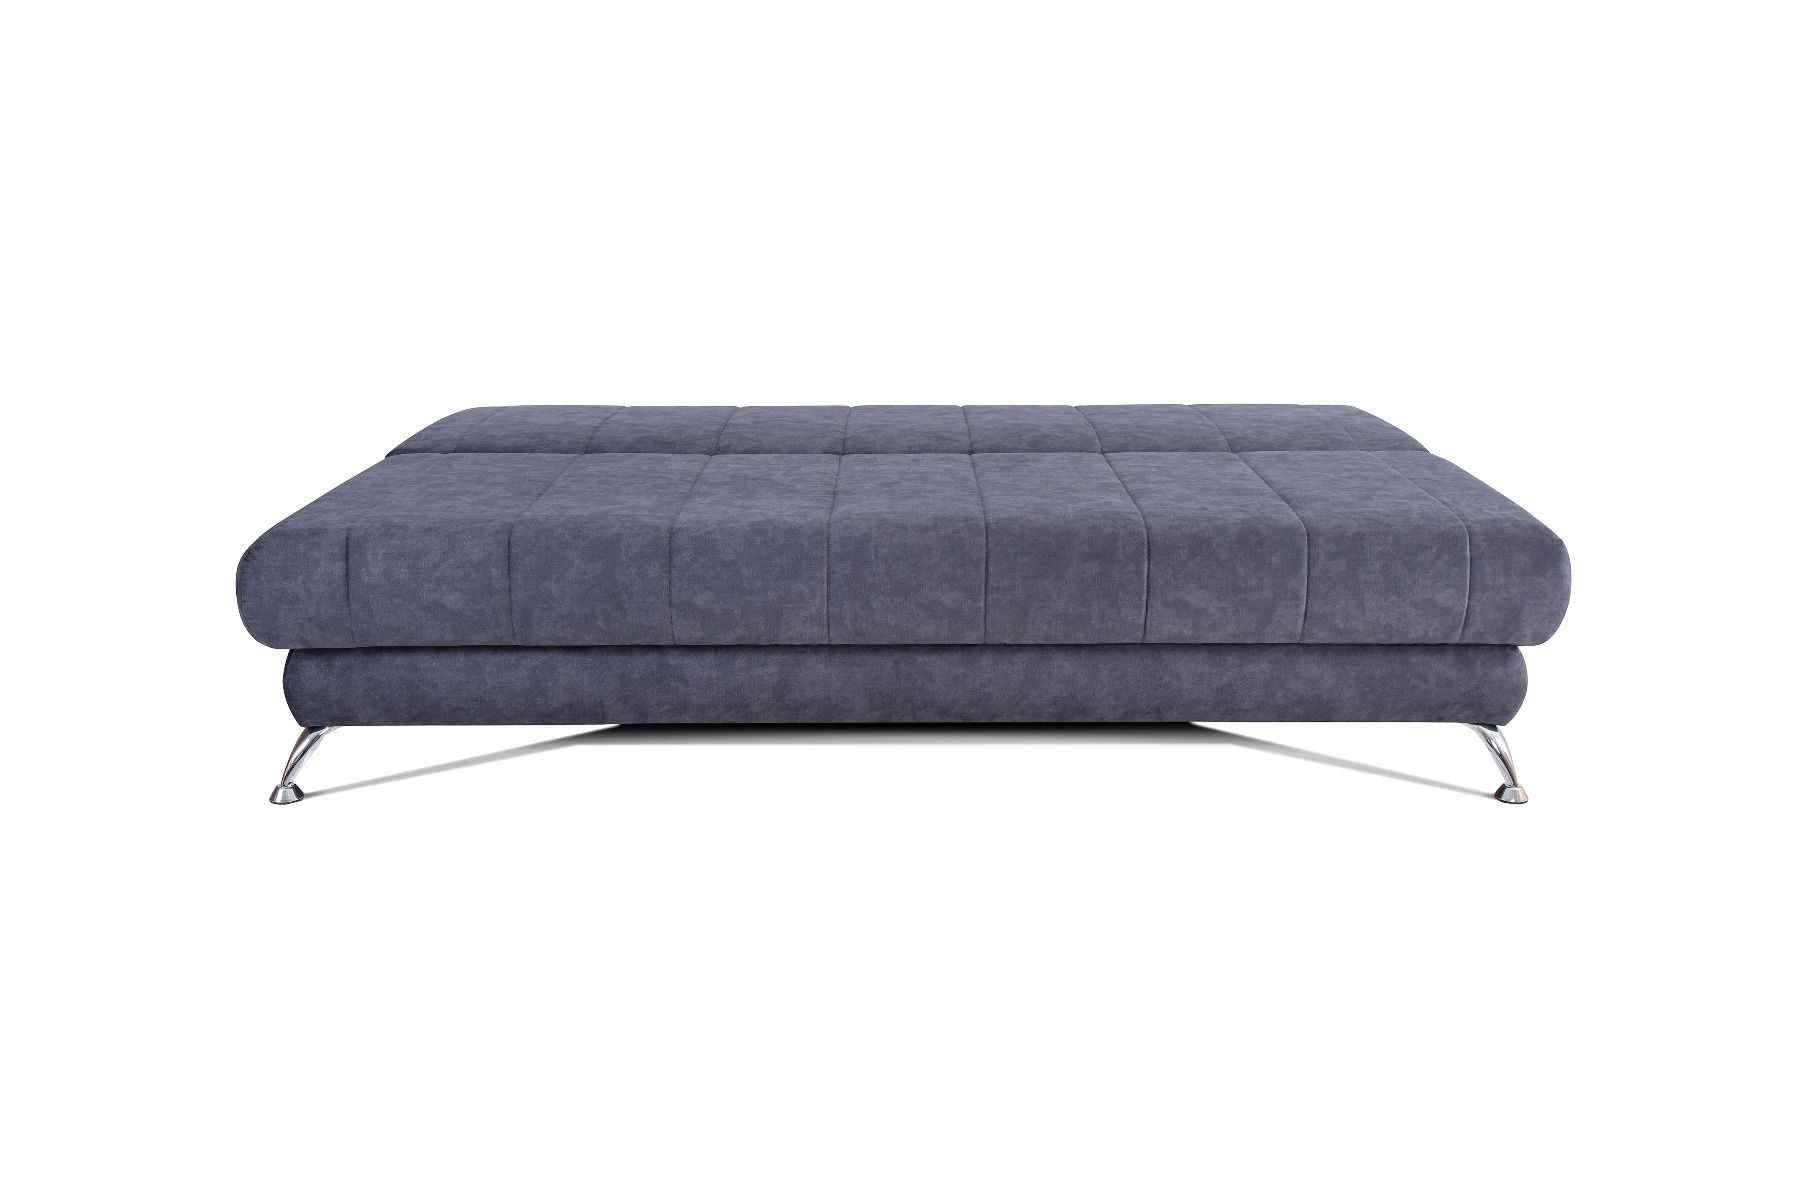 Нов модерен диван с функция за спане / MODERN LIVING